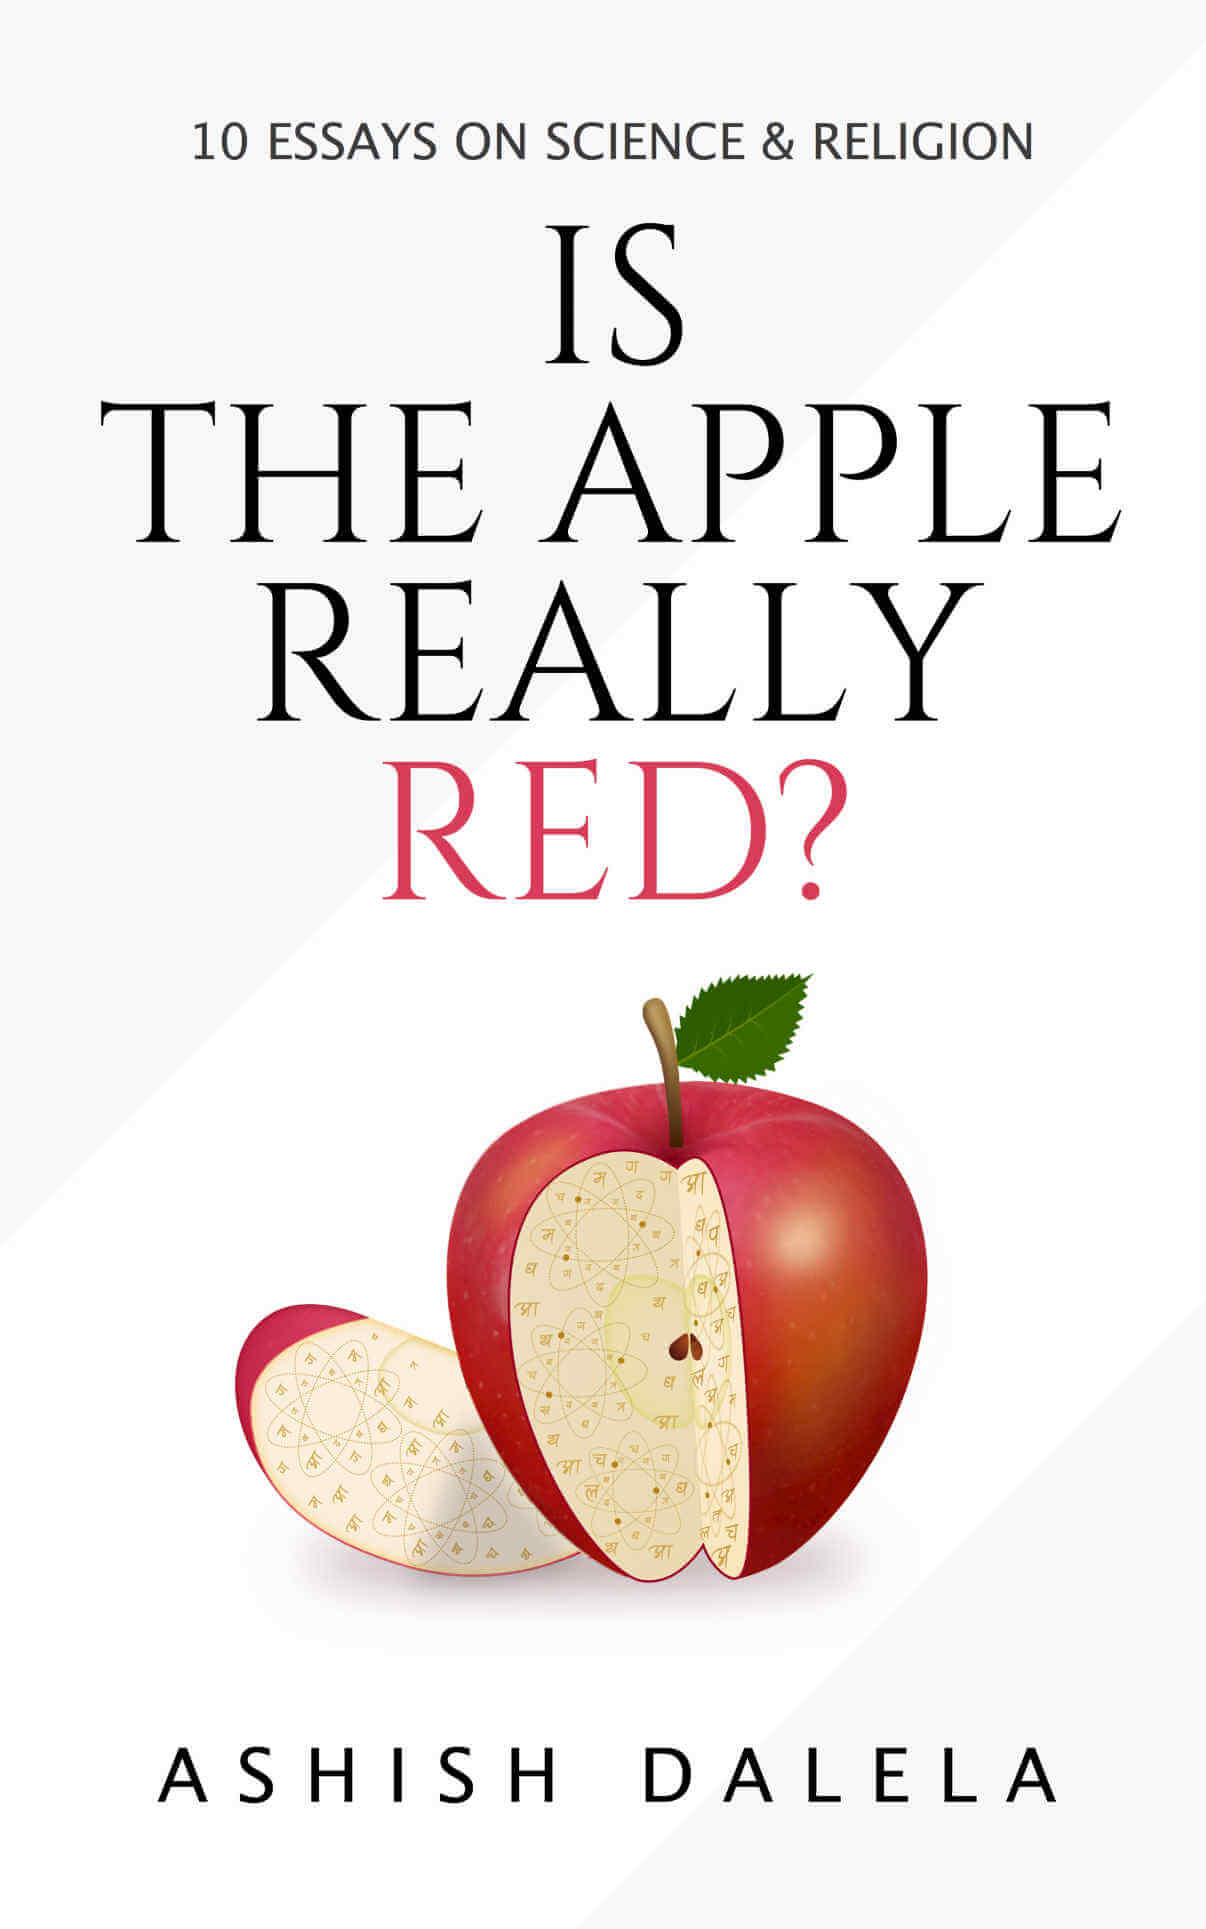 هل التفاح أحمر حقًا ؟: 10 مقالات عن العلم والدين